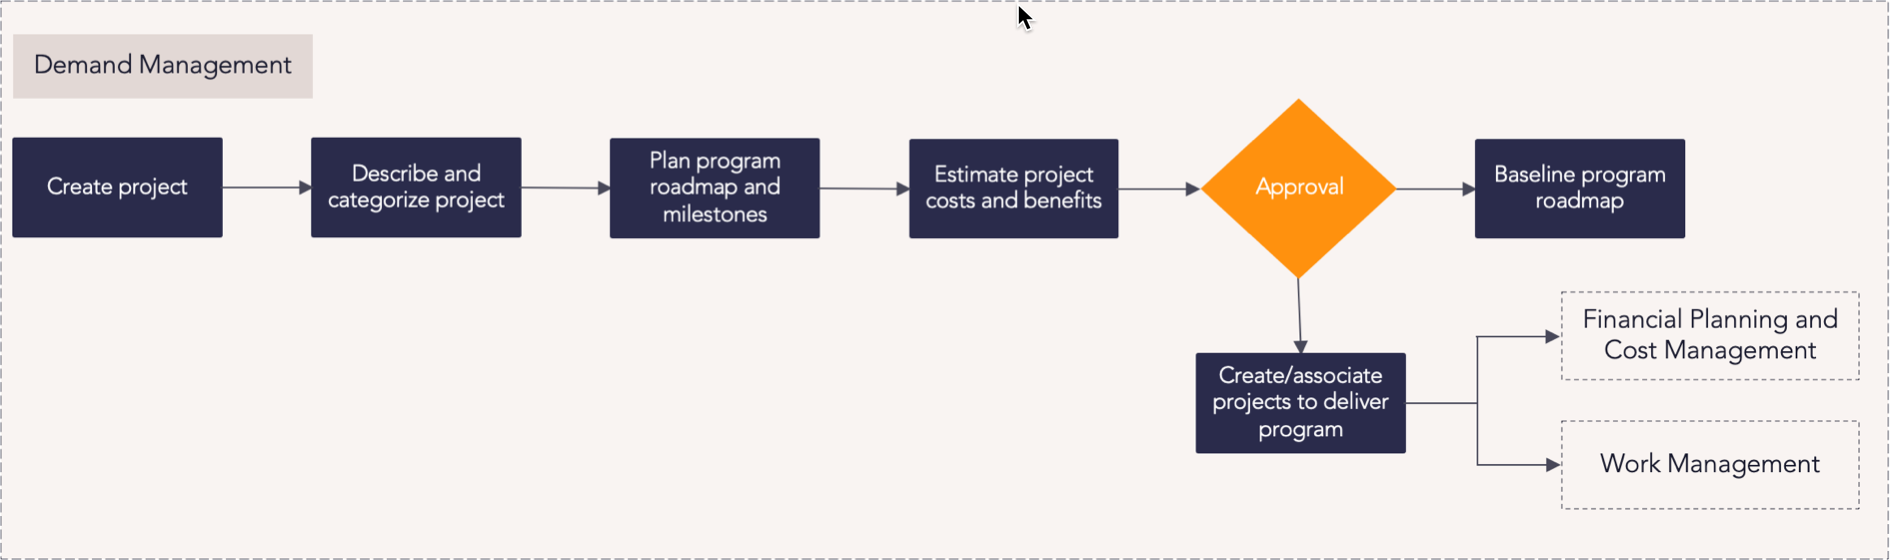 Program Portfolio Management - Demand Management Process Flow 2.png